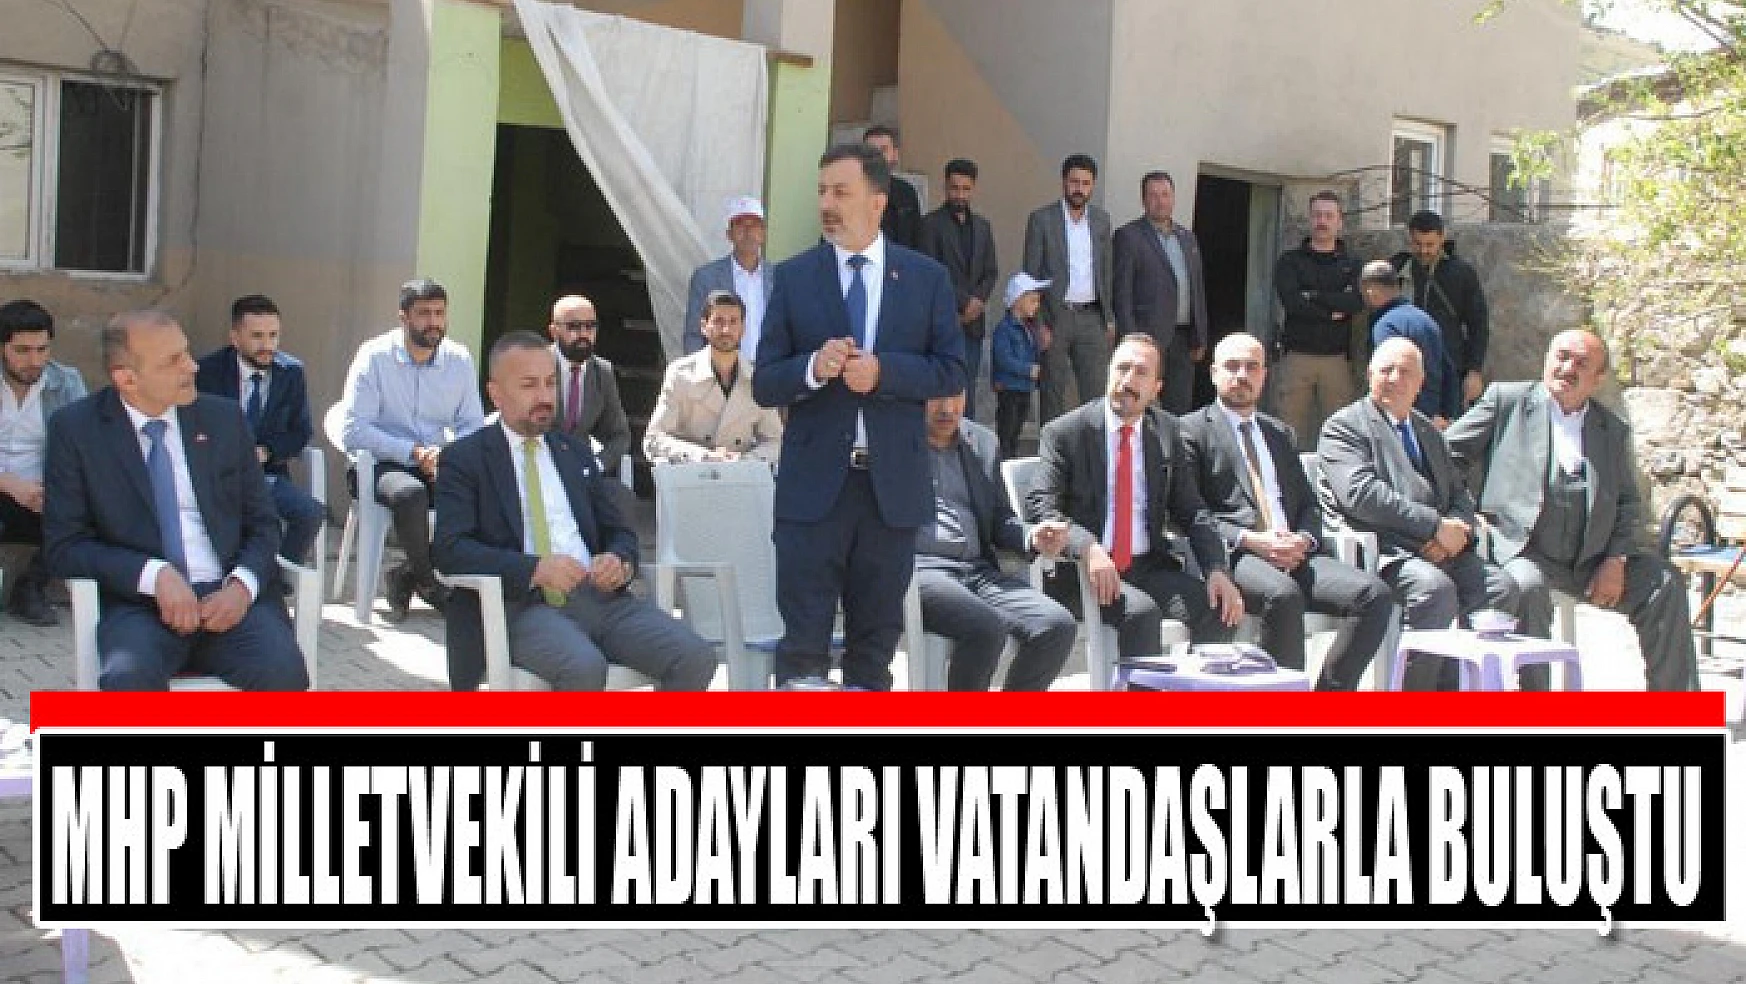 MHP milletvekili adayları vatandaşlarla buluştu